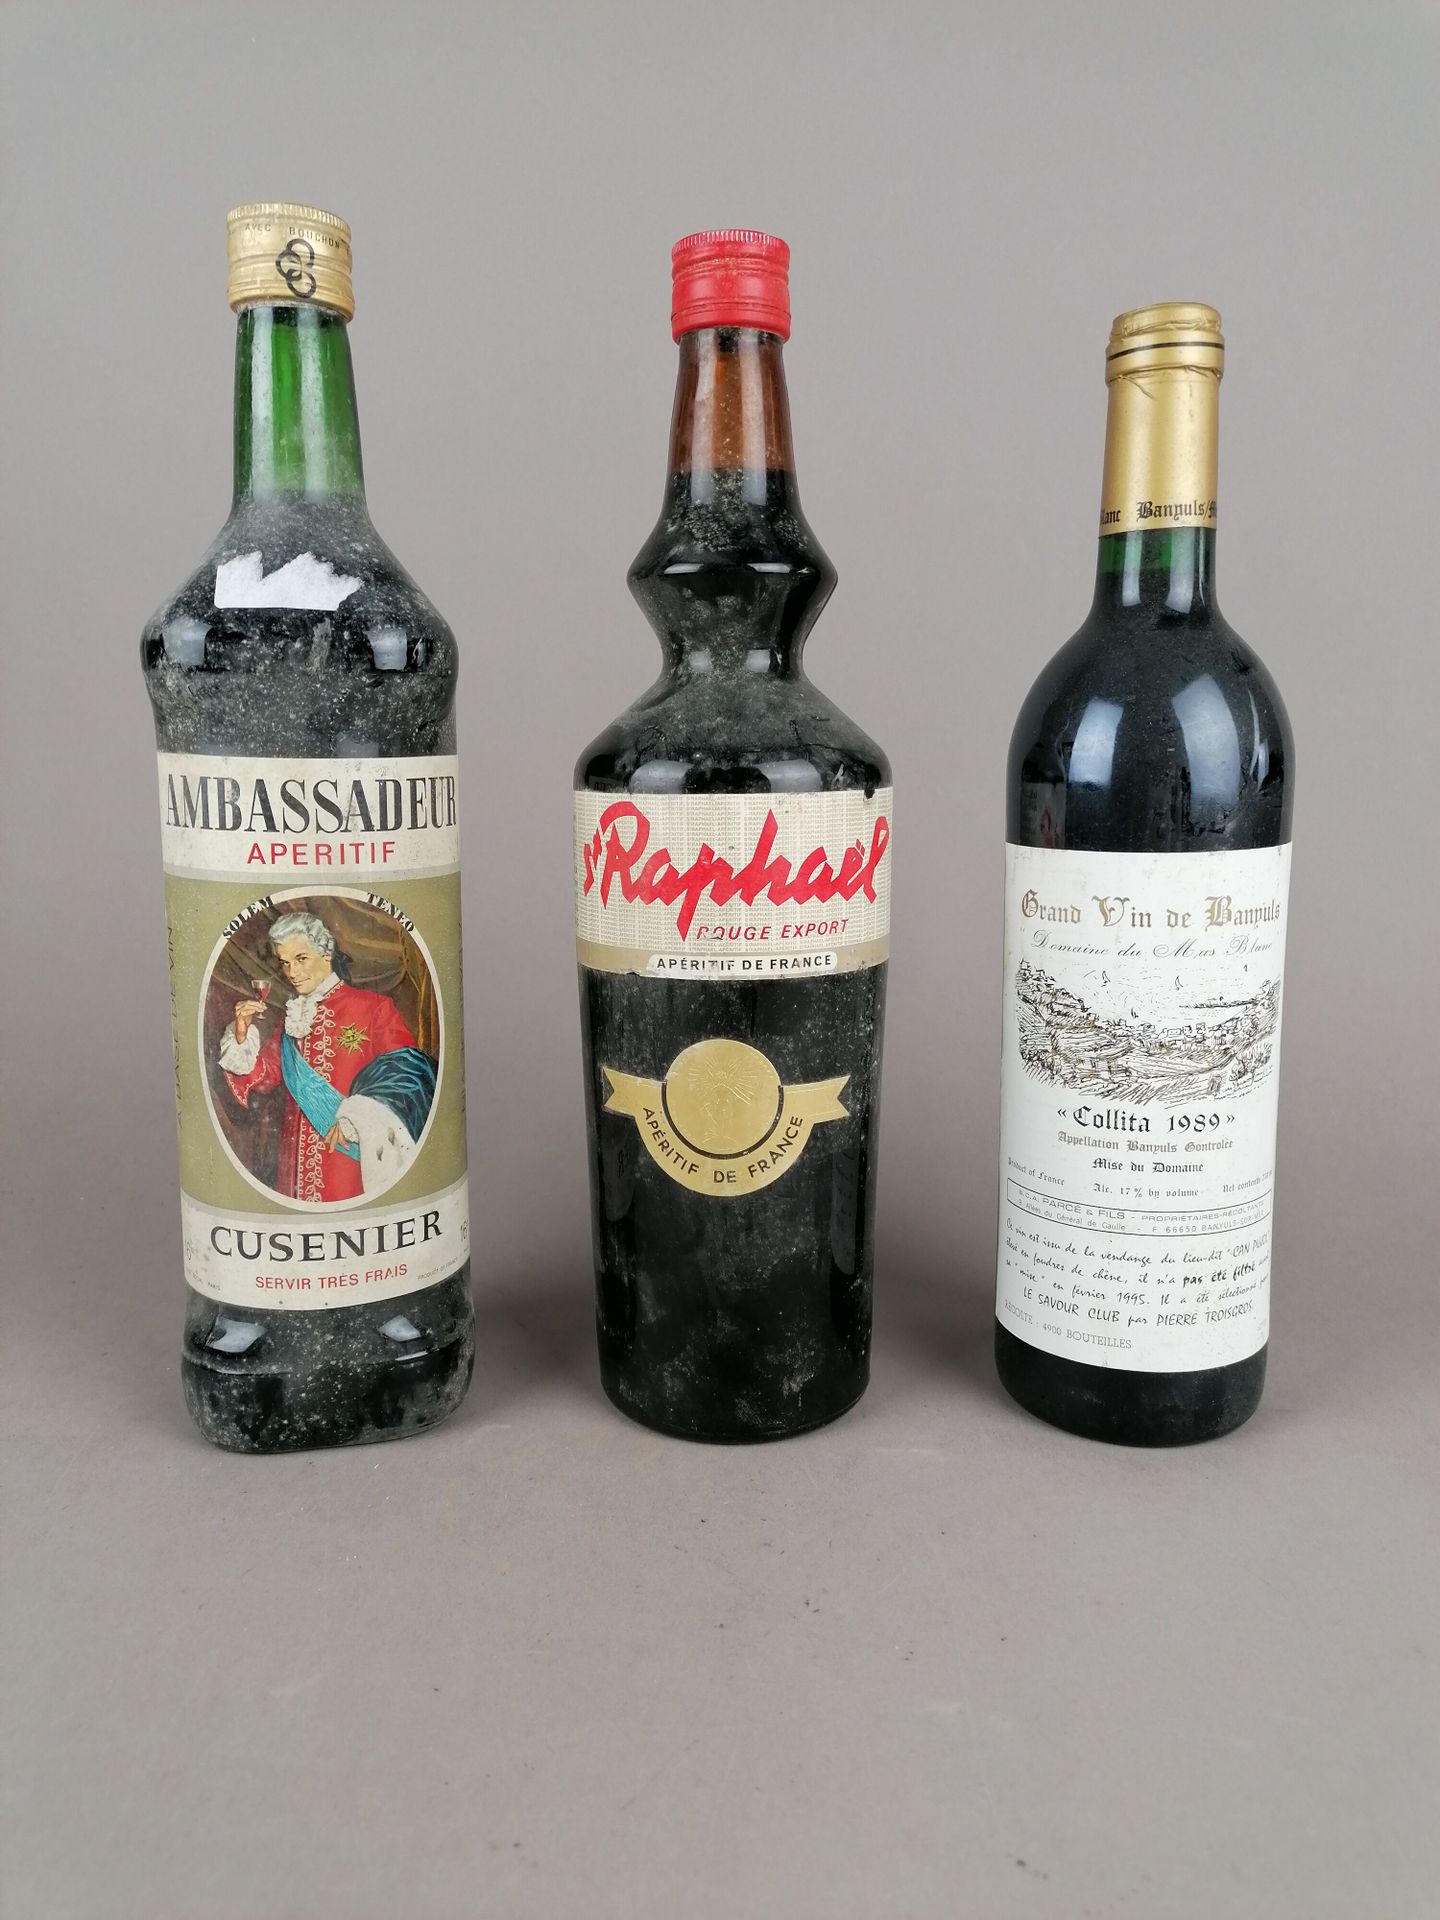 Null 3瓶:

1瓶Aperitif Ambassadeur Cusenier开胃酒

1瓶圣拉斐尔红葡萄酒开胃酒

班尤尔-科利塔1989年白马酒庄1瓶